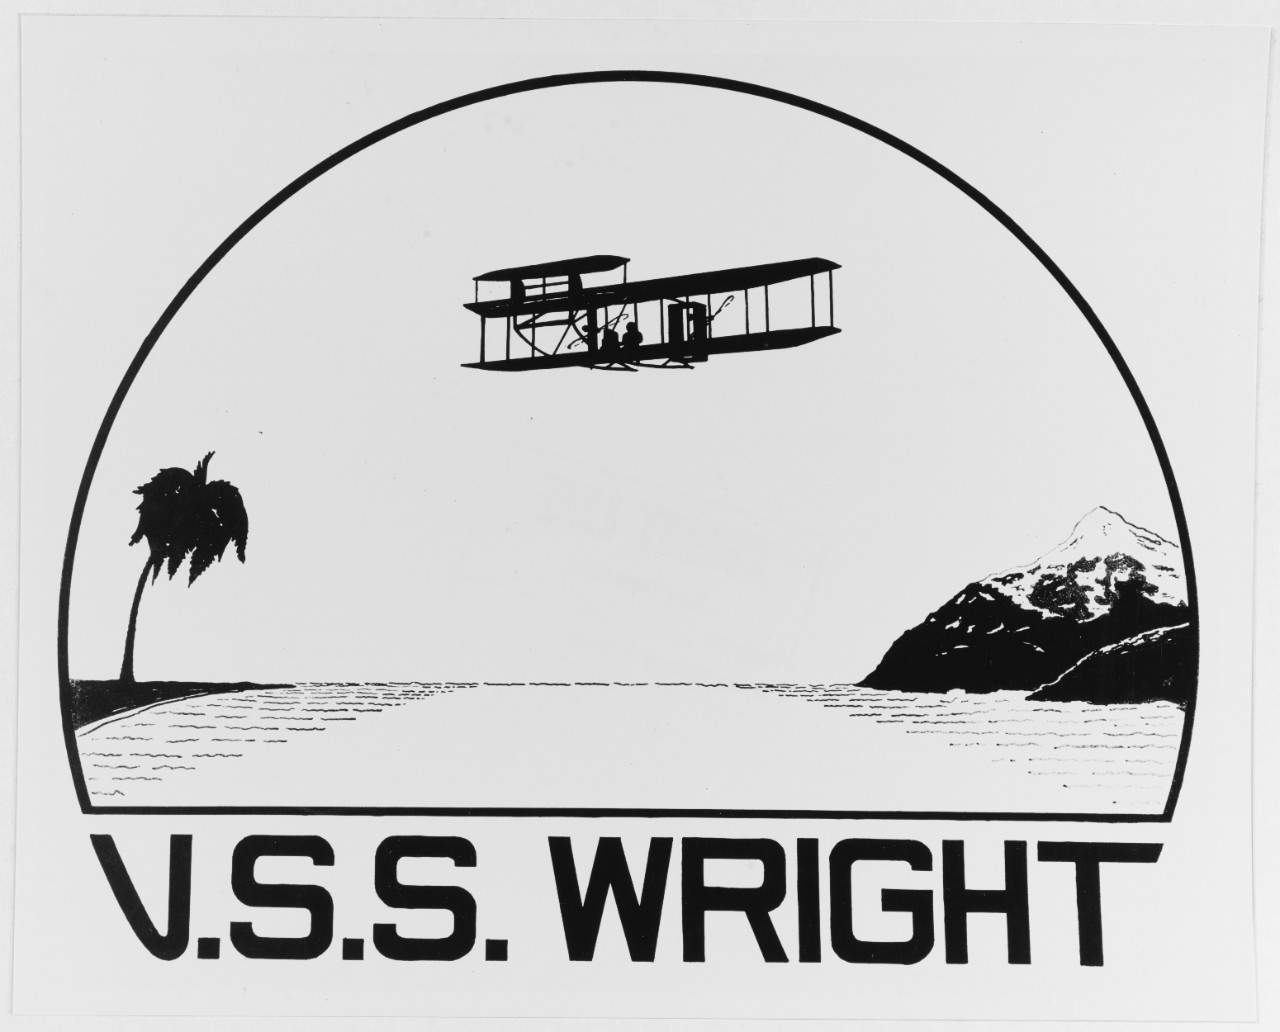 Insignia: USS WRIGHT (AV-1)